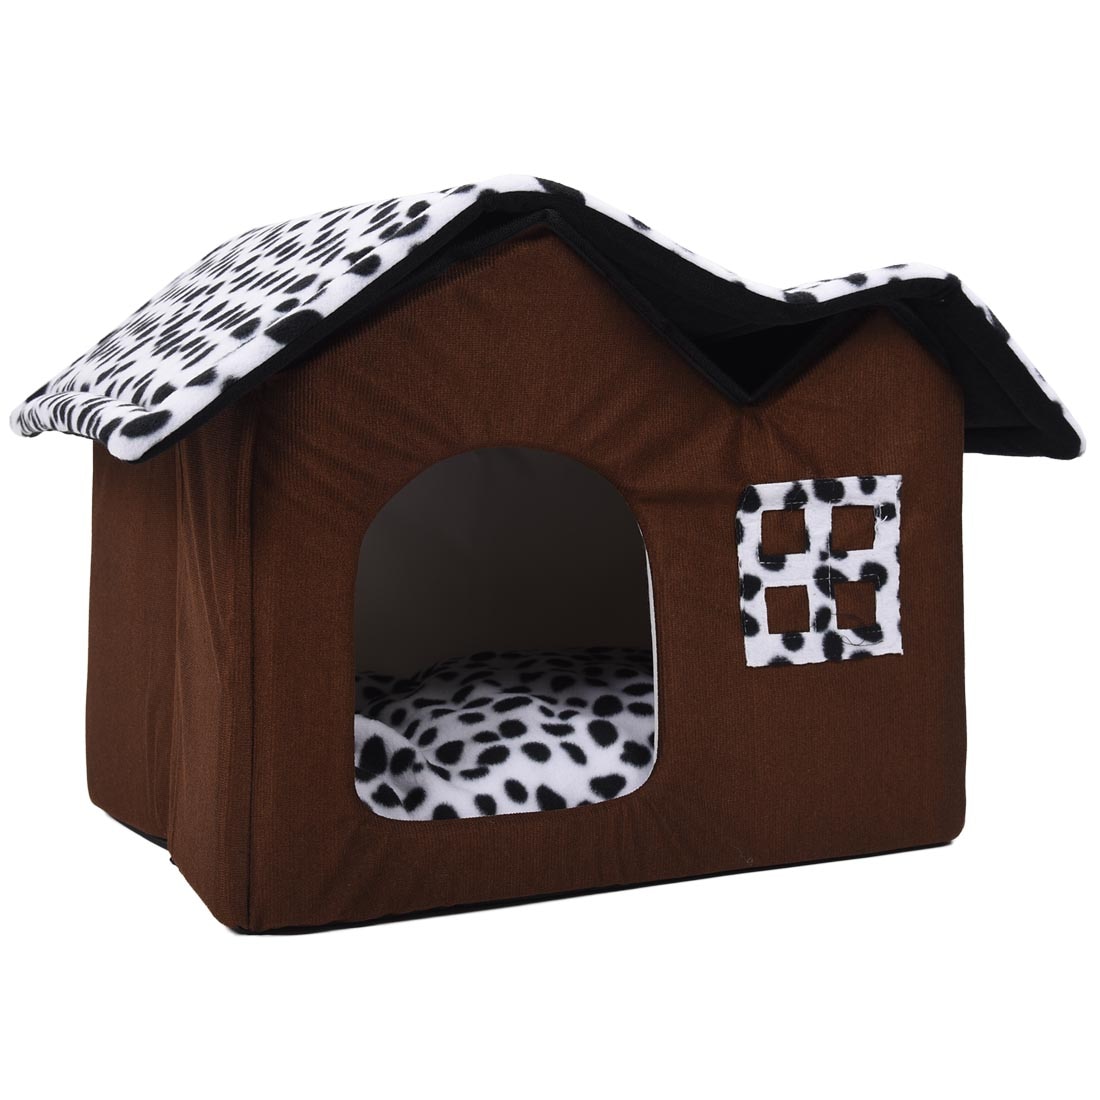 Hot-amovible-chien-lits-Double-Pet-House-brun-chien-chambre-chat-lits-chien-coussin-de-luxe